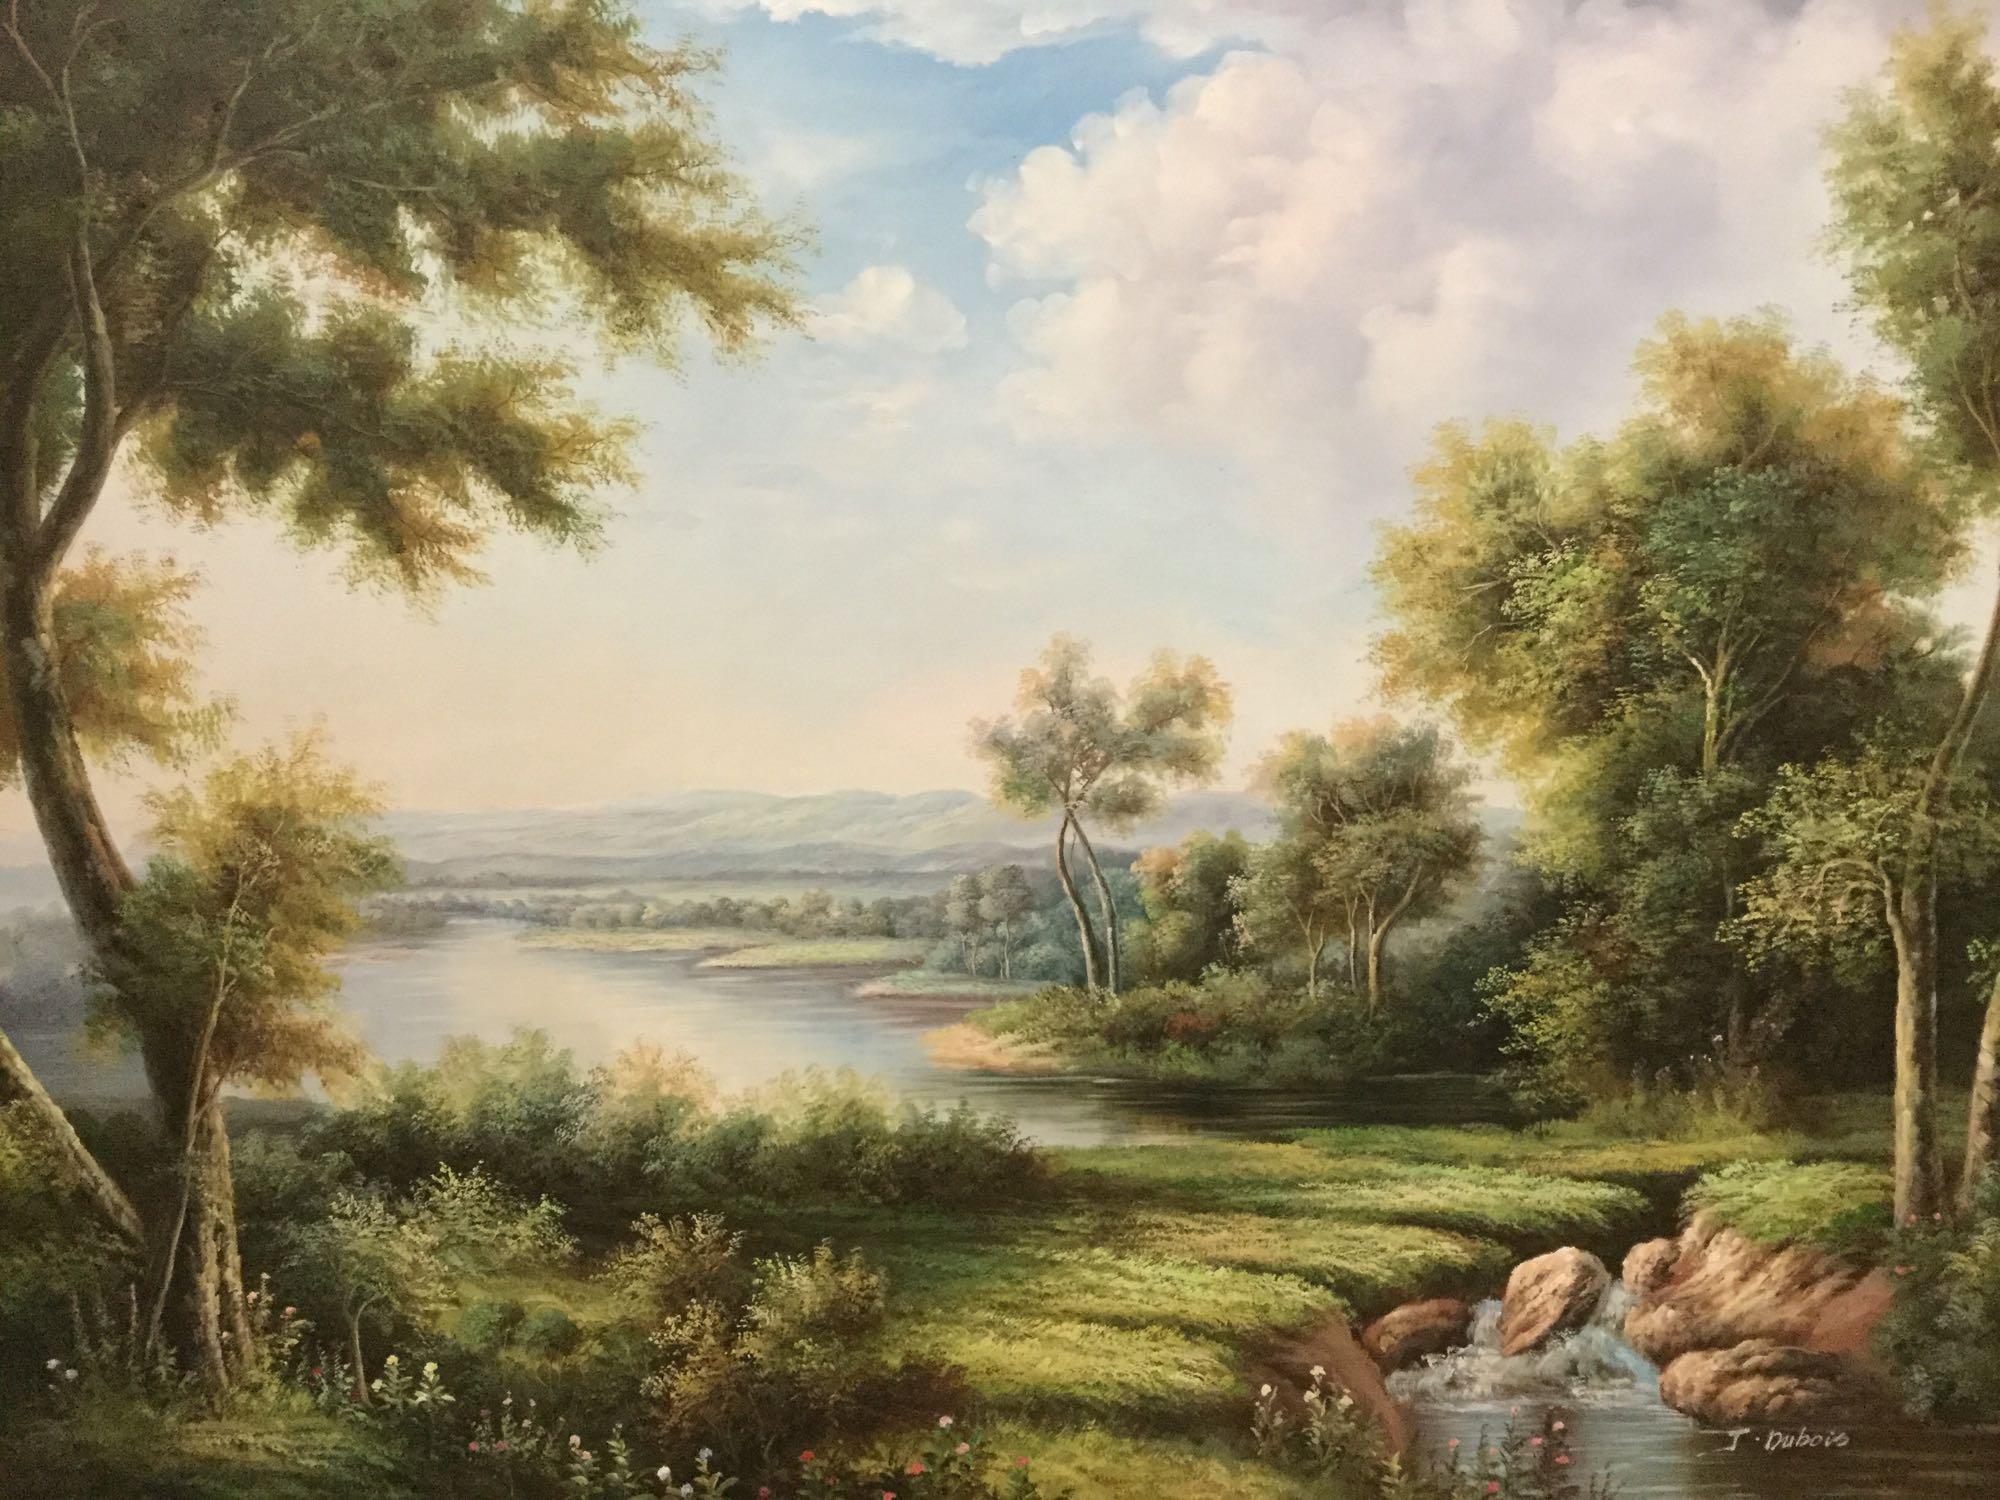 Large original oil on canvas tropical landscape scene in frame signed artist J Dubois